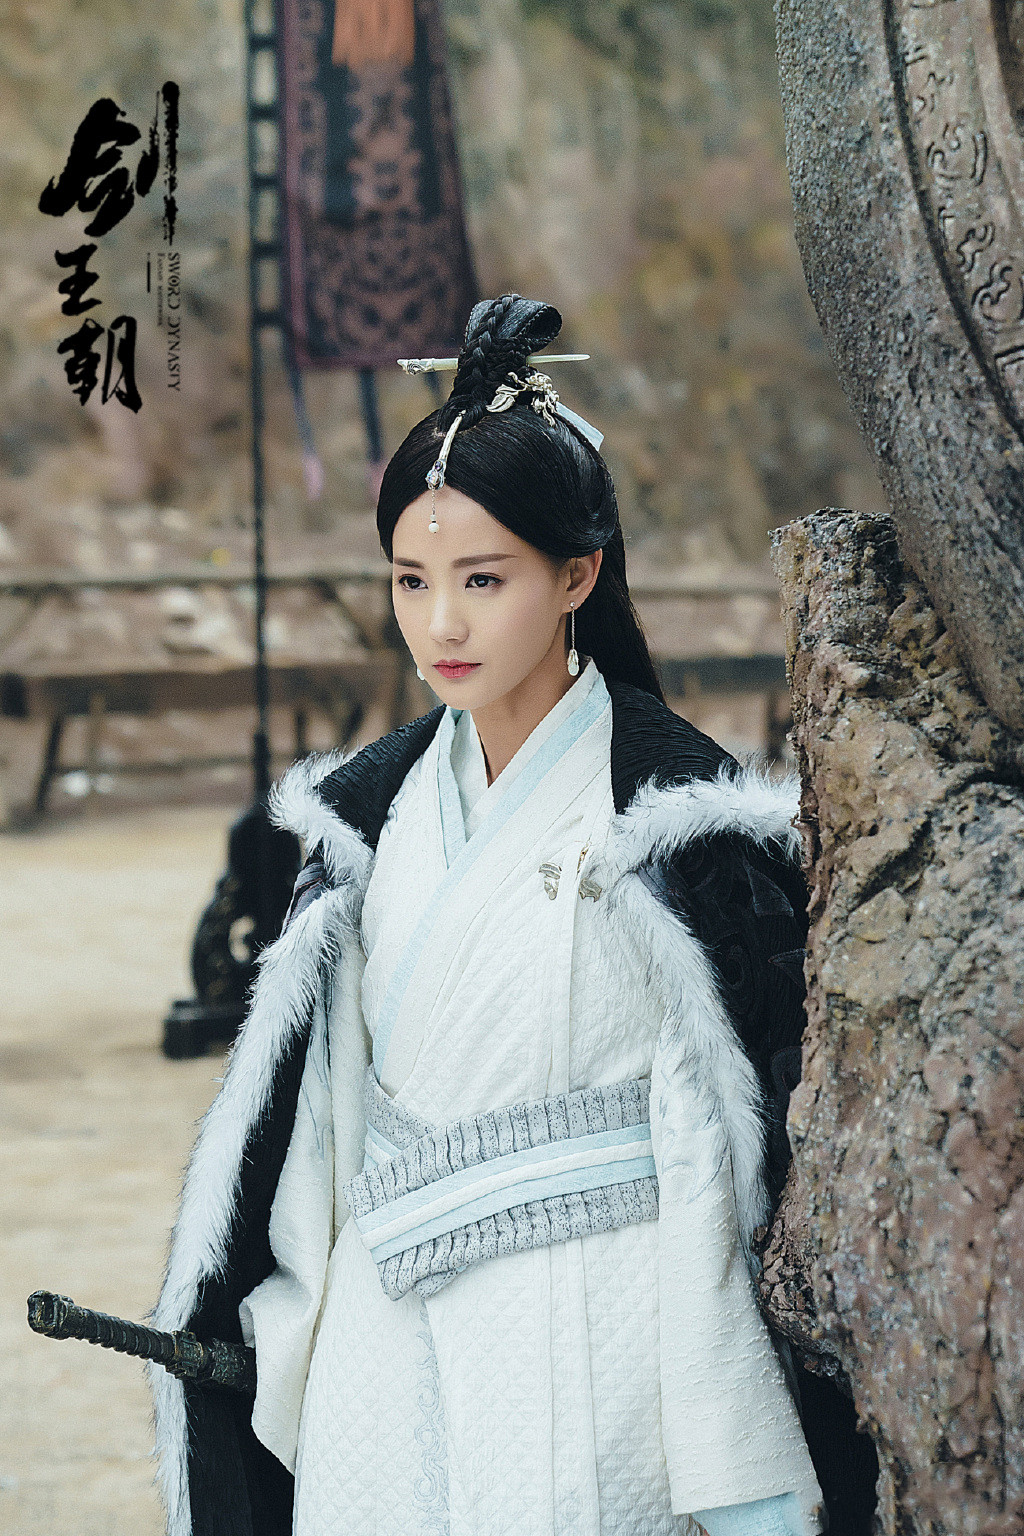 胡仙儿,更是妲己的前身,虽然是个配角,但能看出李一桐的美貌真的是让